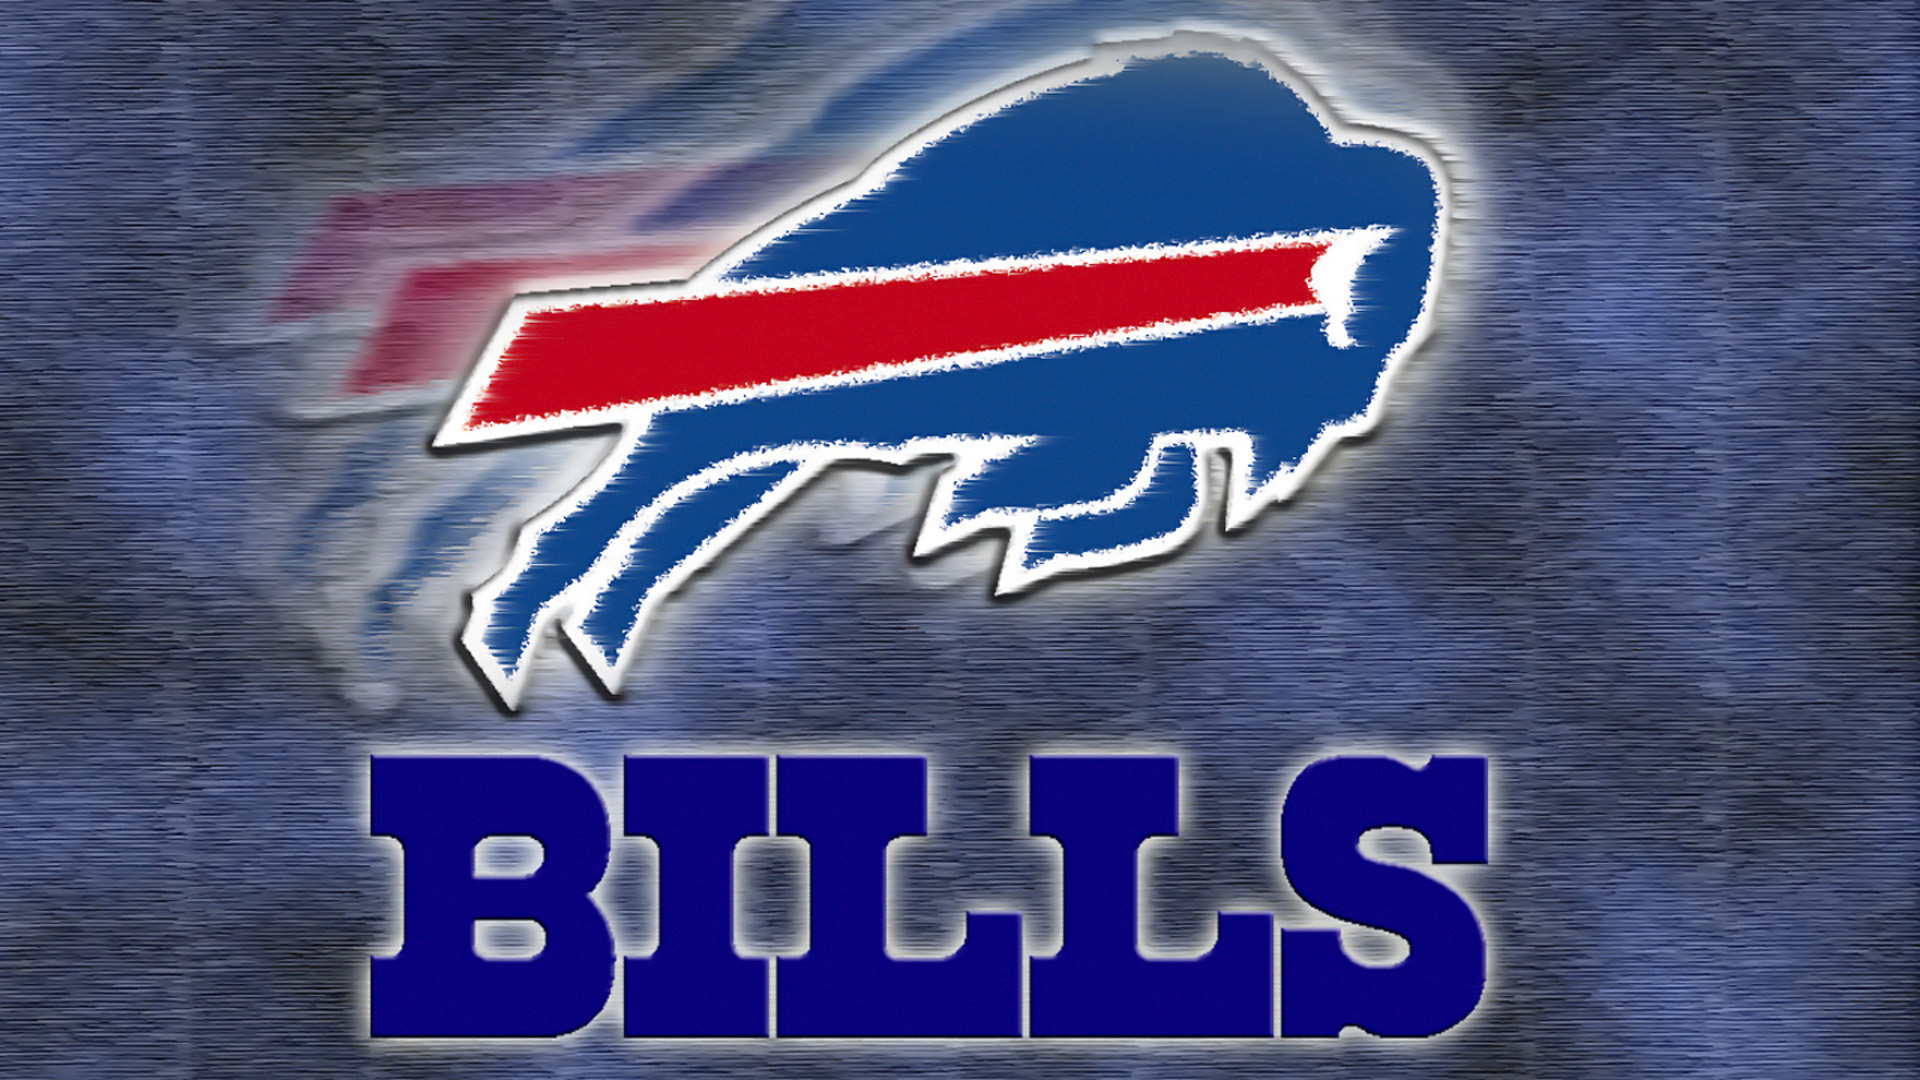 Buffalo Bills Logo Wallpaper